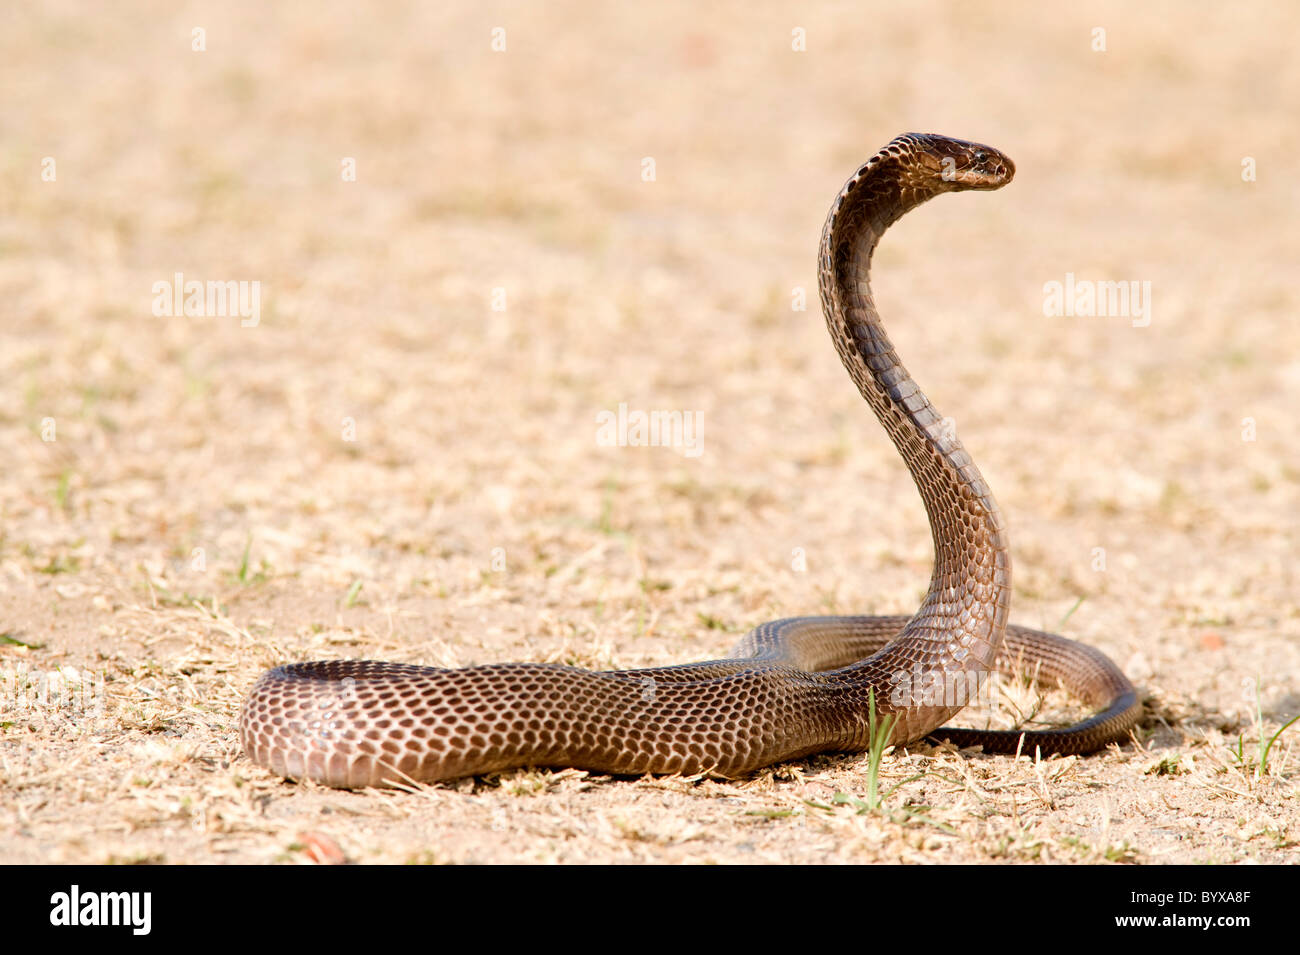 Egyptian cobra Snake Naja haje India Stock Photo